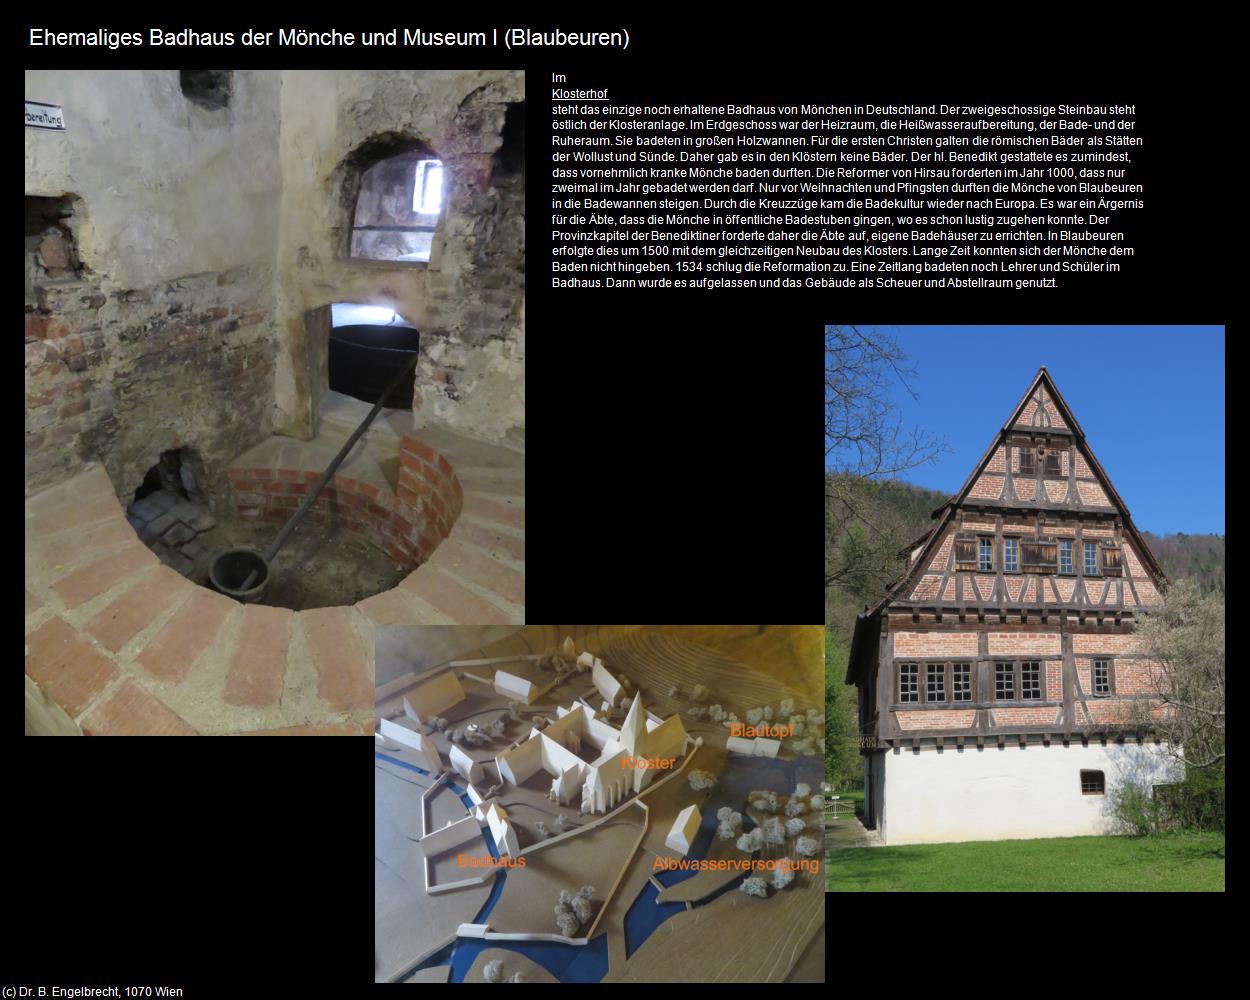 Ehem. Badhaus der Mönche und Museum I (Blaubeuren) in Kulturatlas-BADEN-WÜRTTEMBERG(c)B.Engelbrecht